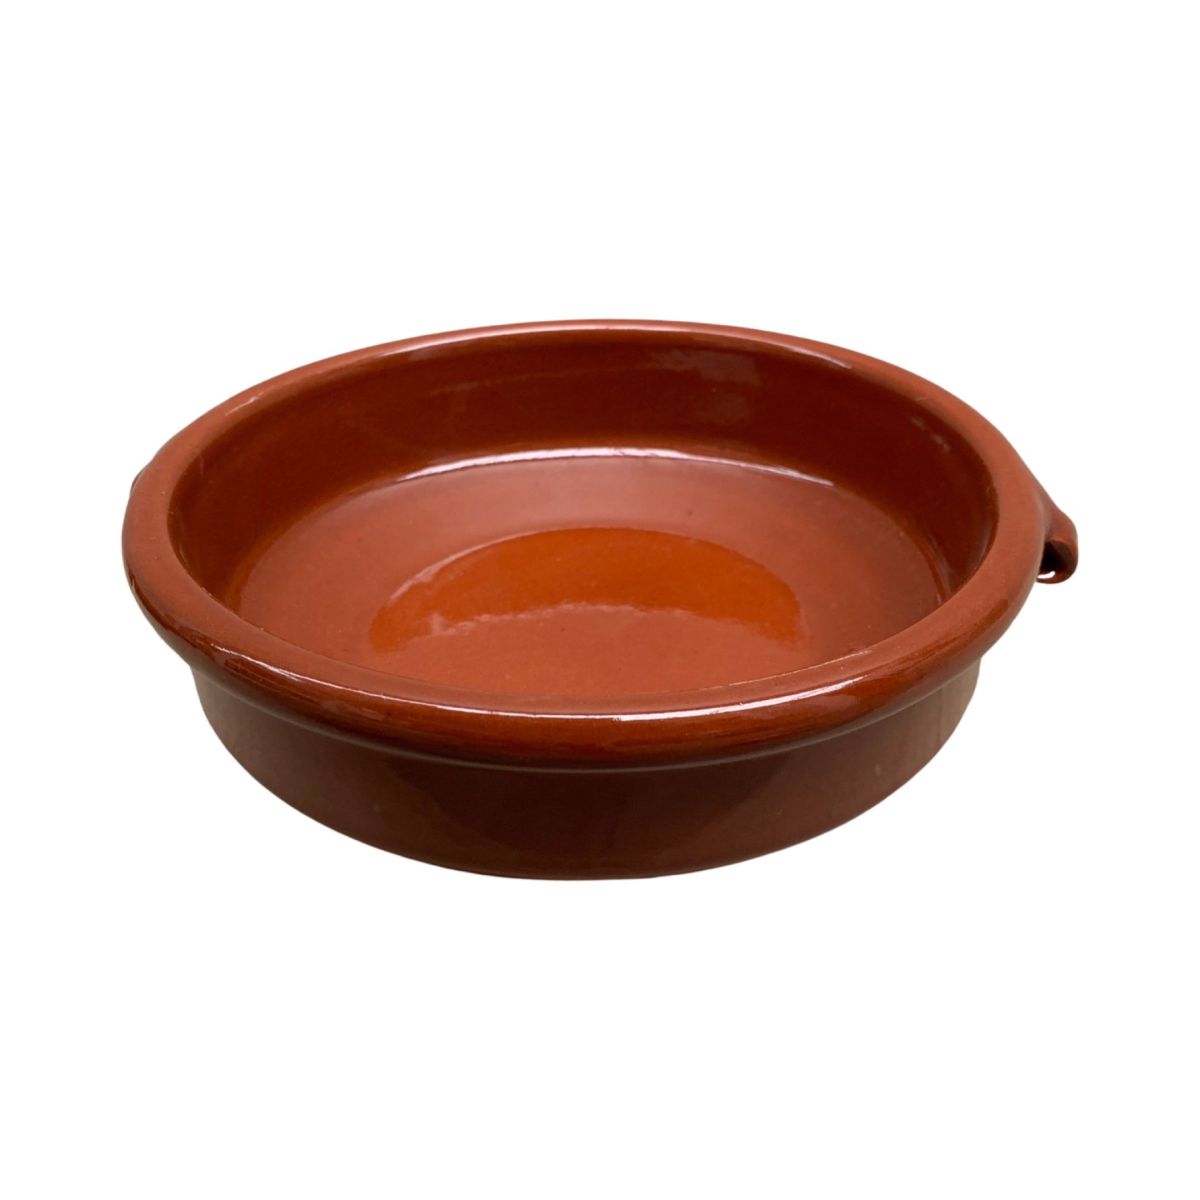 terracotta baking dish brown round 17cm